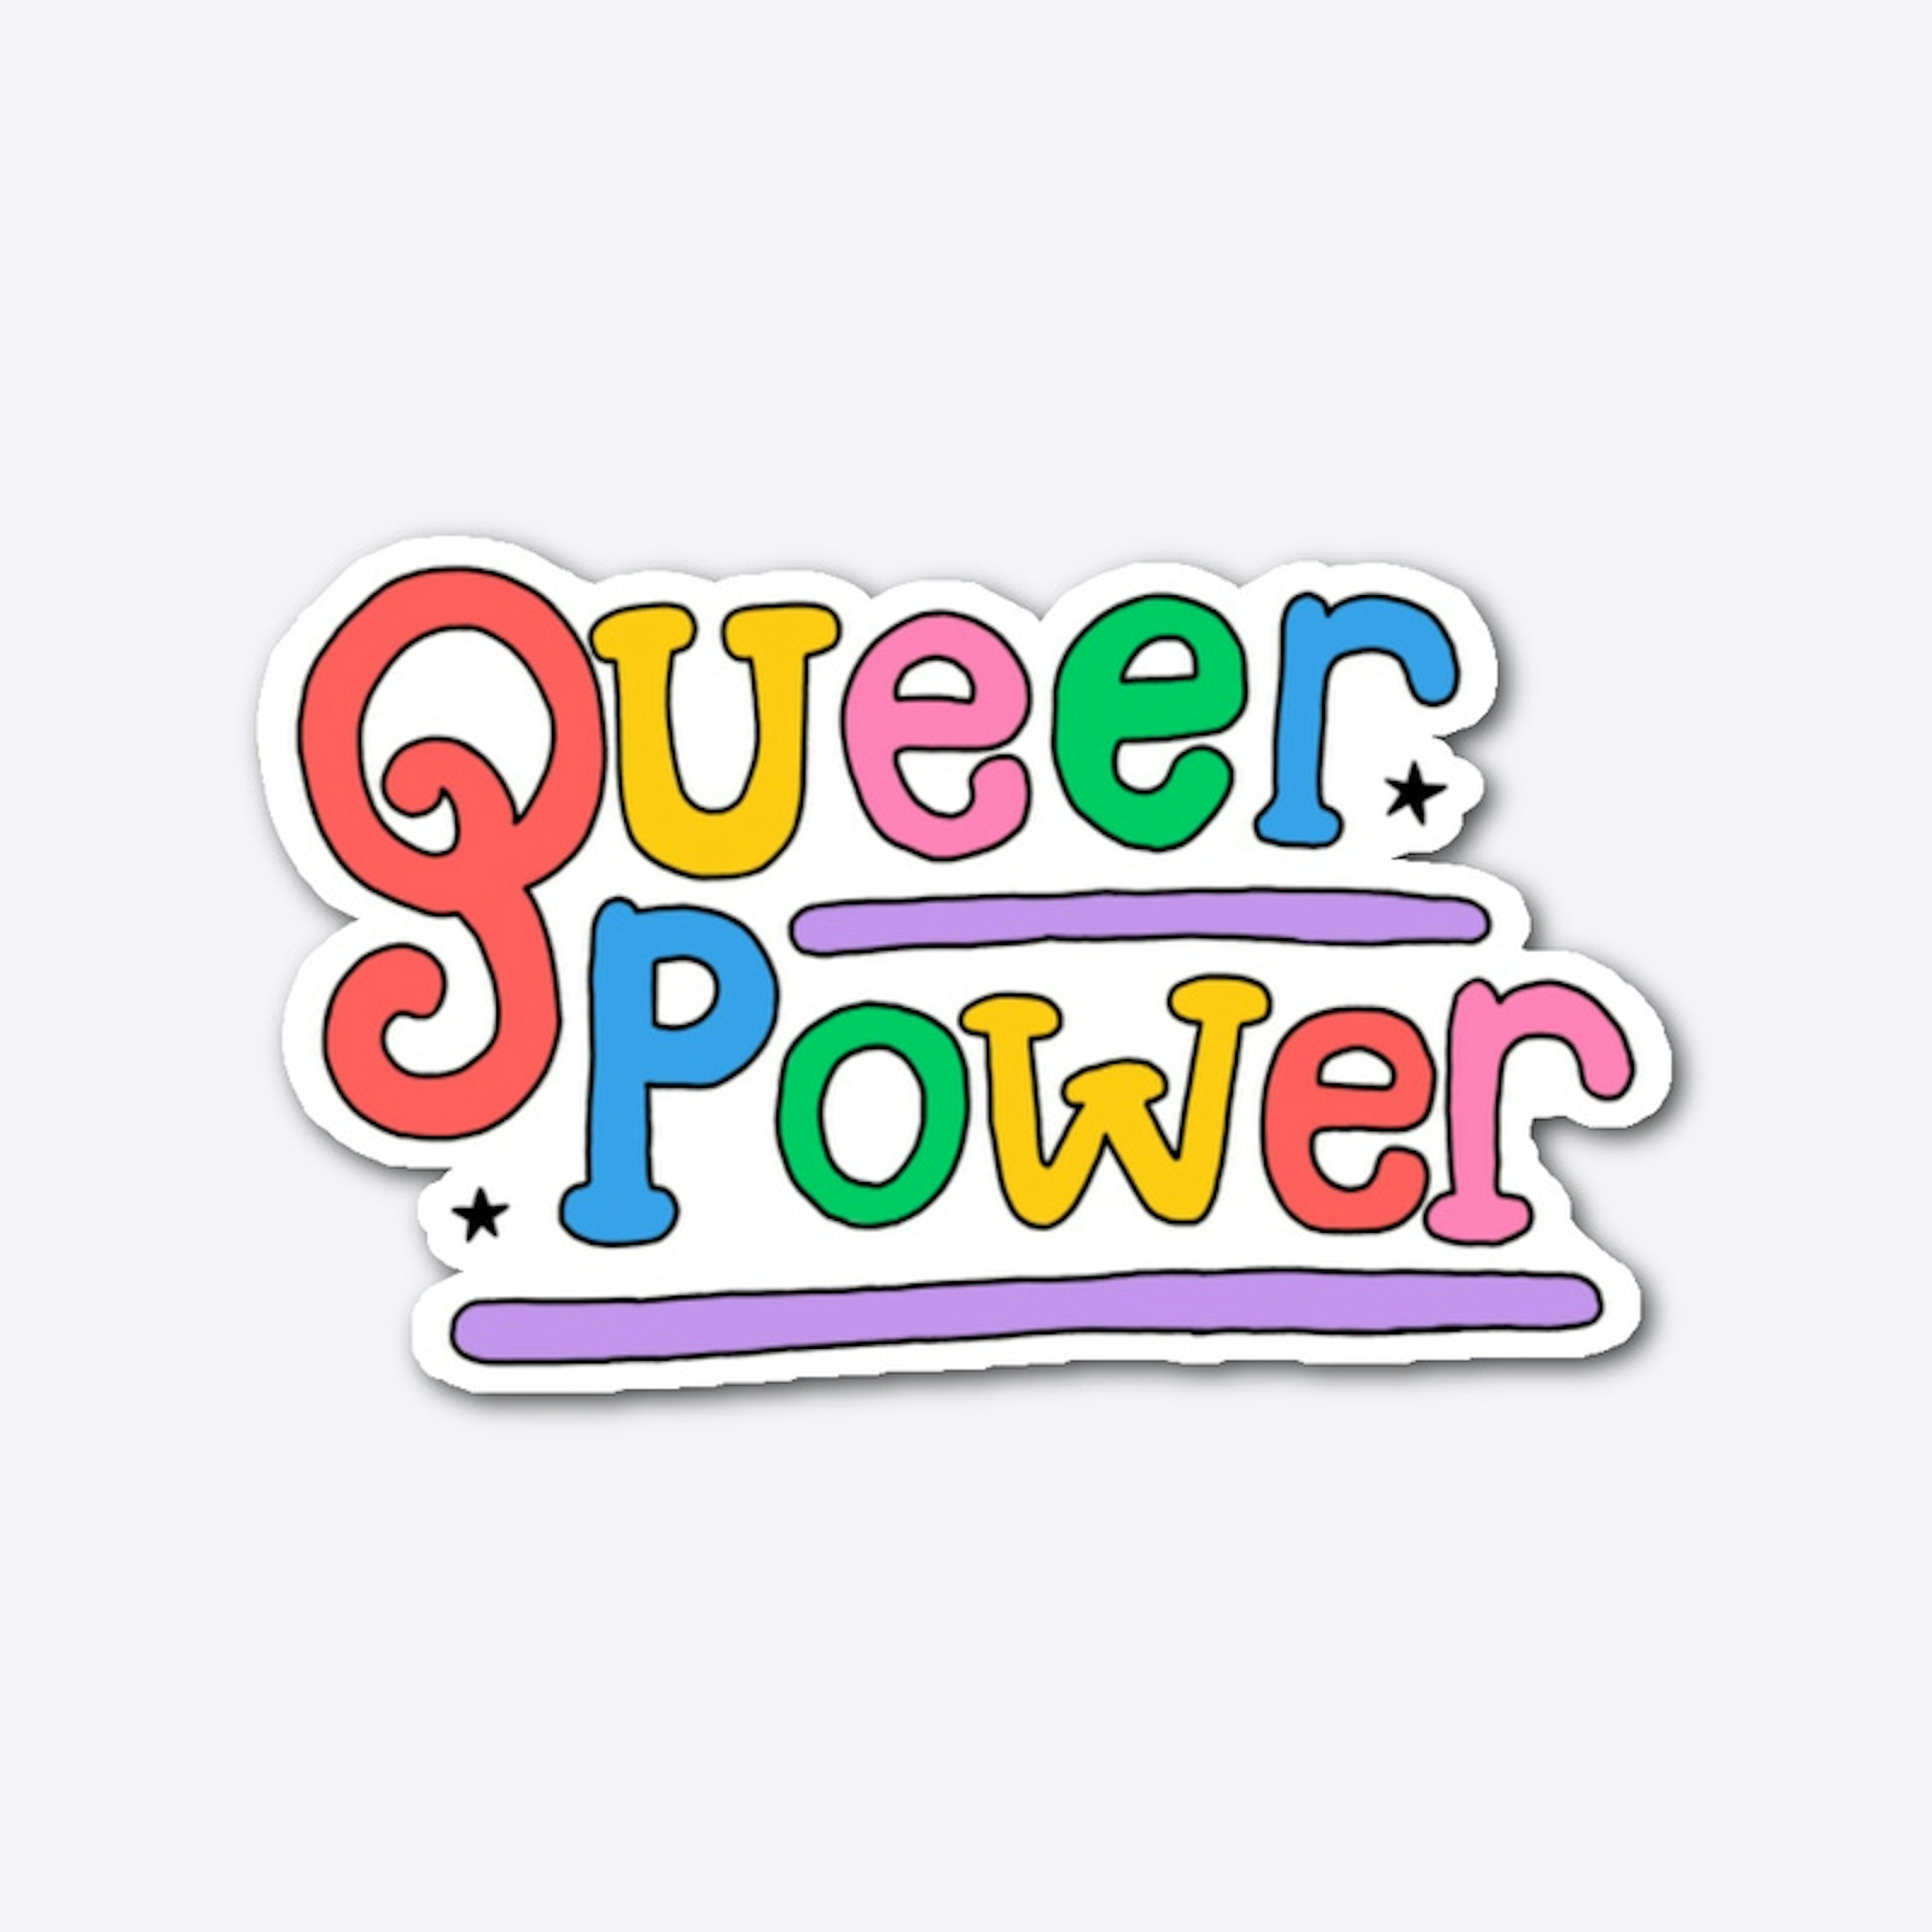 Queer Power 